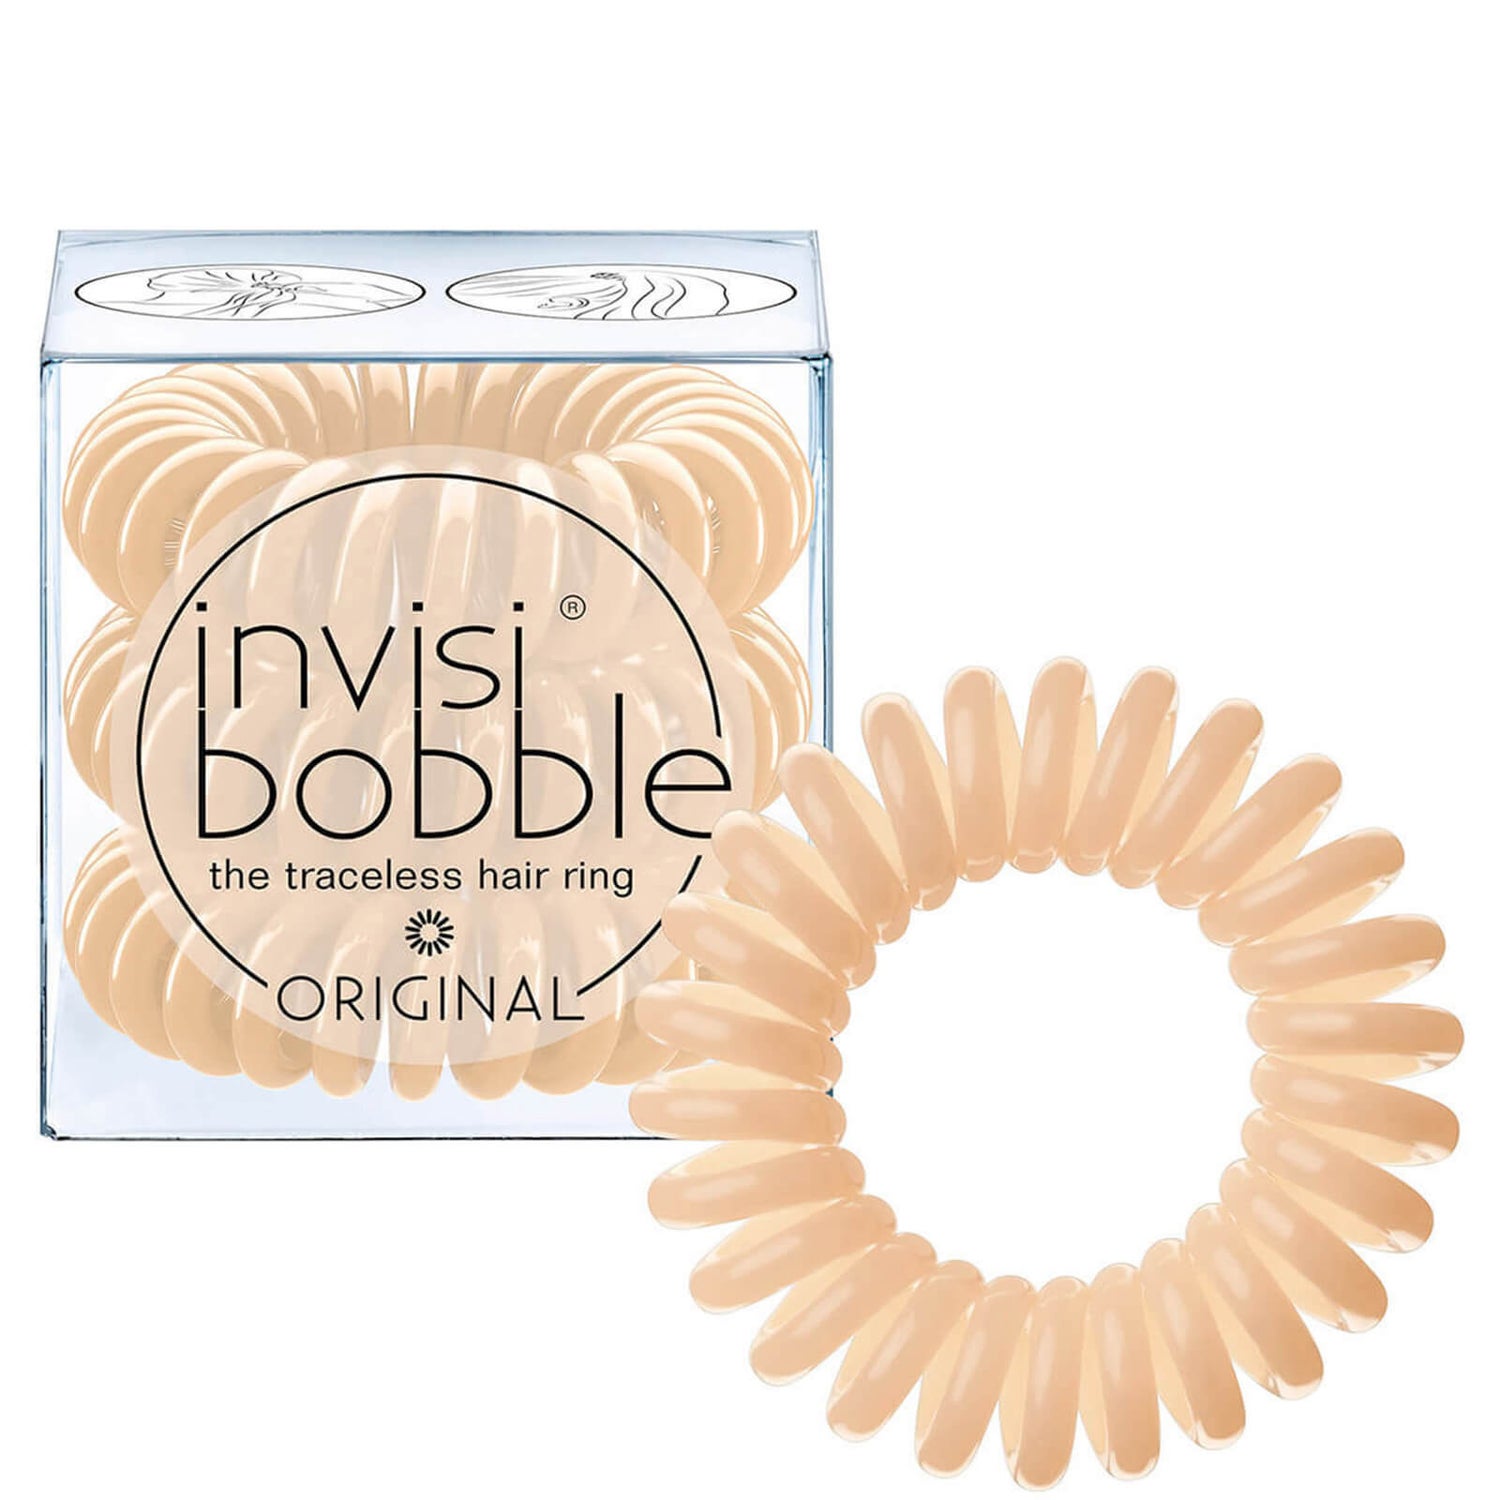 Резинка для волос invisibobble Original (3 шт. в упаковке) – To Be or Nude to Be